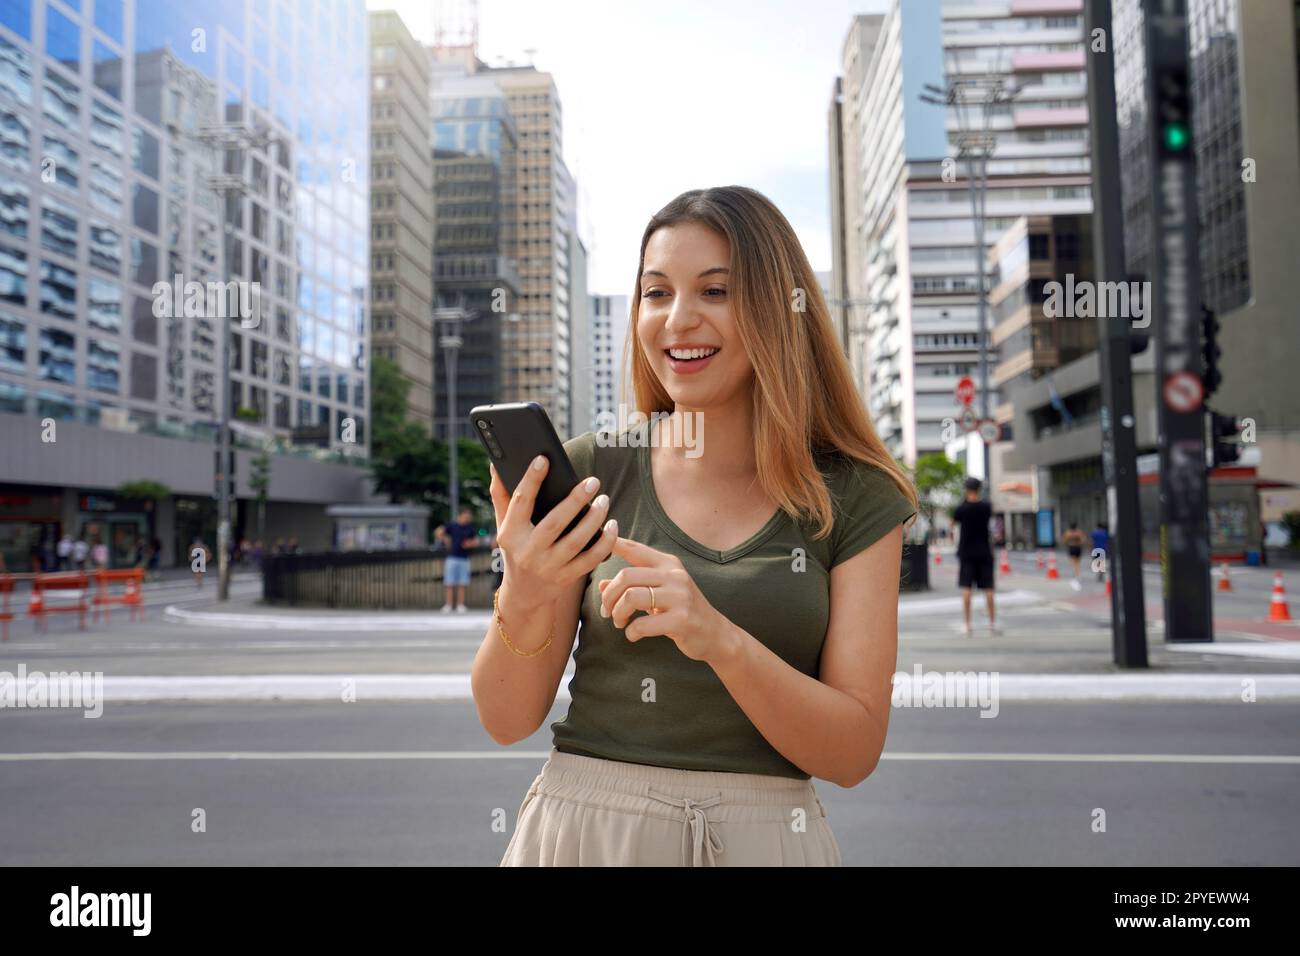 Joyeuse fille brésilienne regardant la vidéo drôle sur le téléphone debout dans la rue le jour. Les cheveux bruns avec un sourire toothy portent un t-shirt vert. Concept de dépendance aux médias sociaux. Banque D'Images